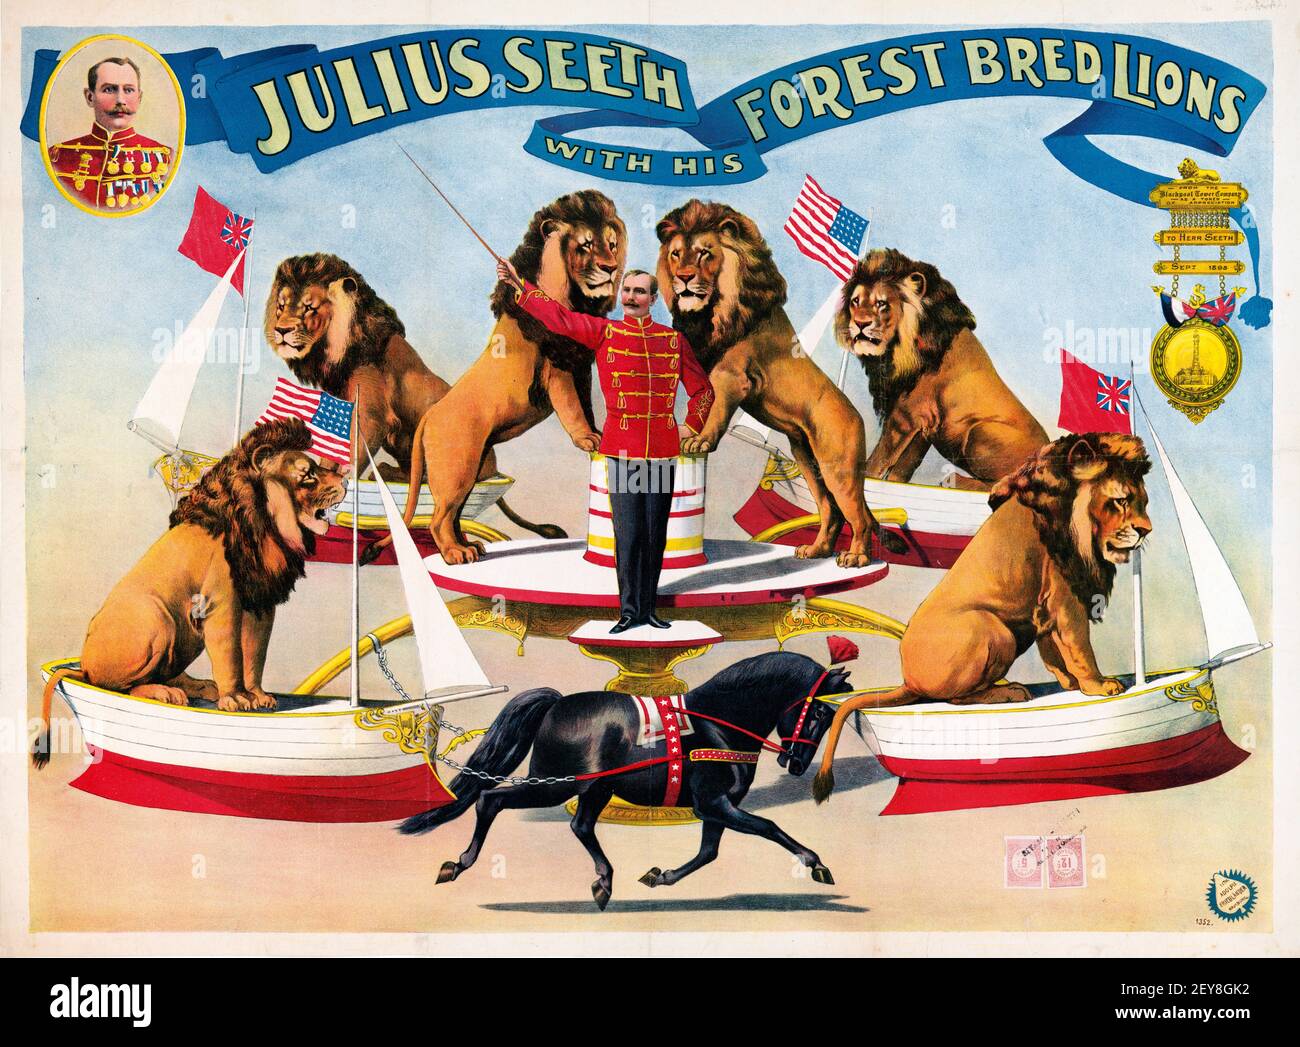 Julius siehet mit seinen Forest Bred Lions. Alter und Vintage-Stil. Stockfoto